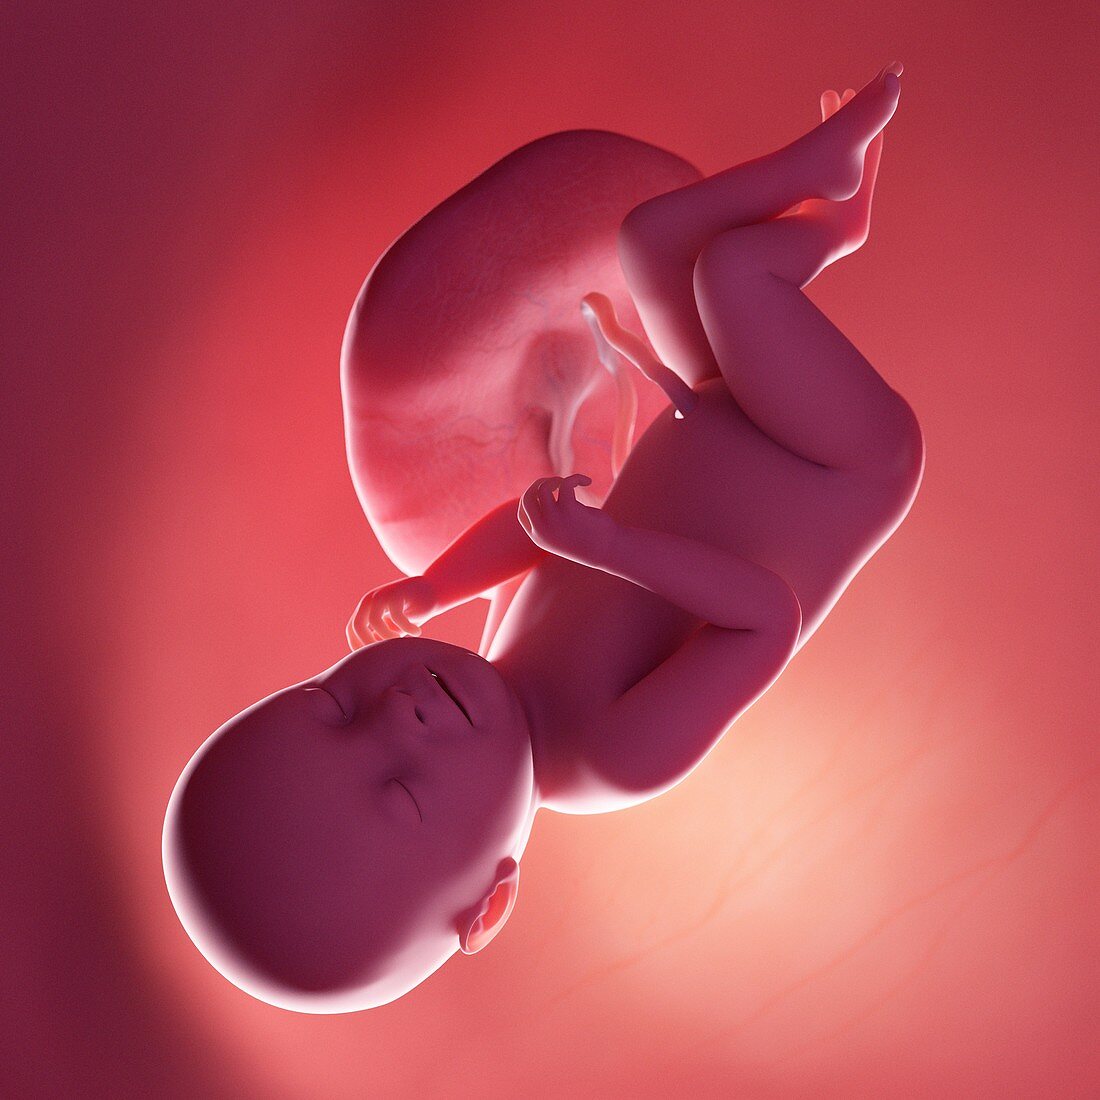 Fetus at week 38, illustration